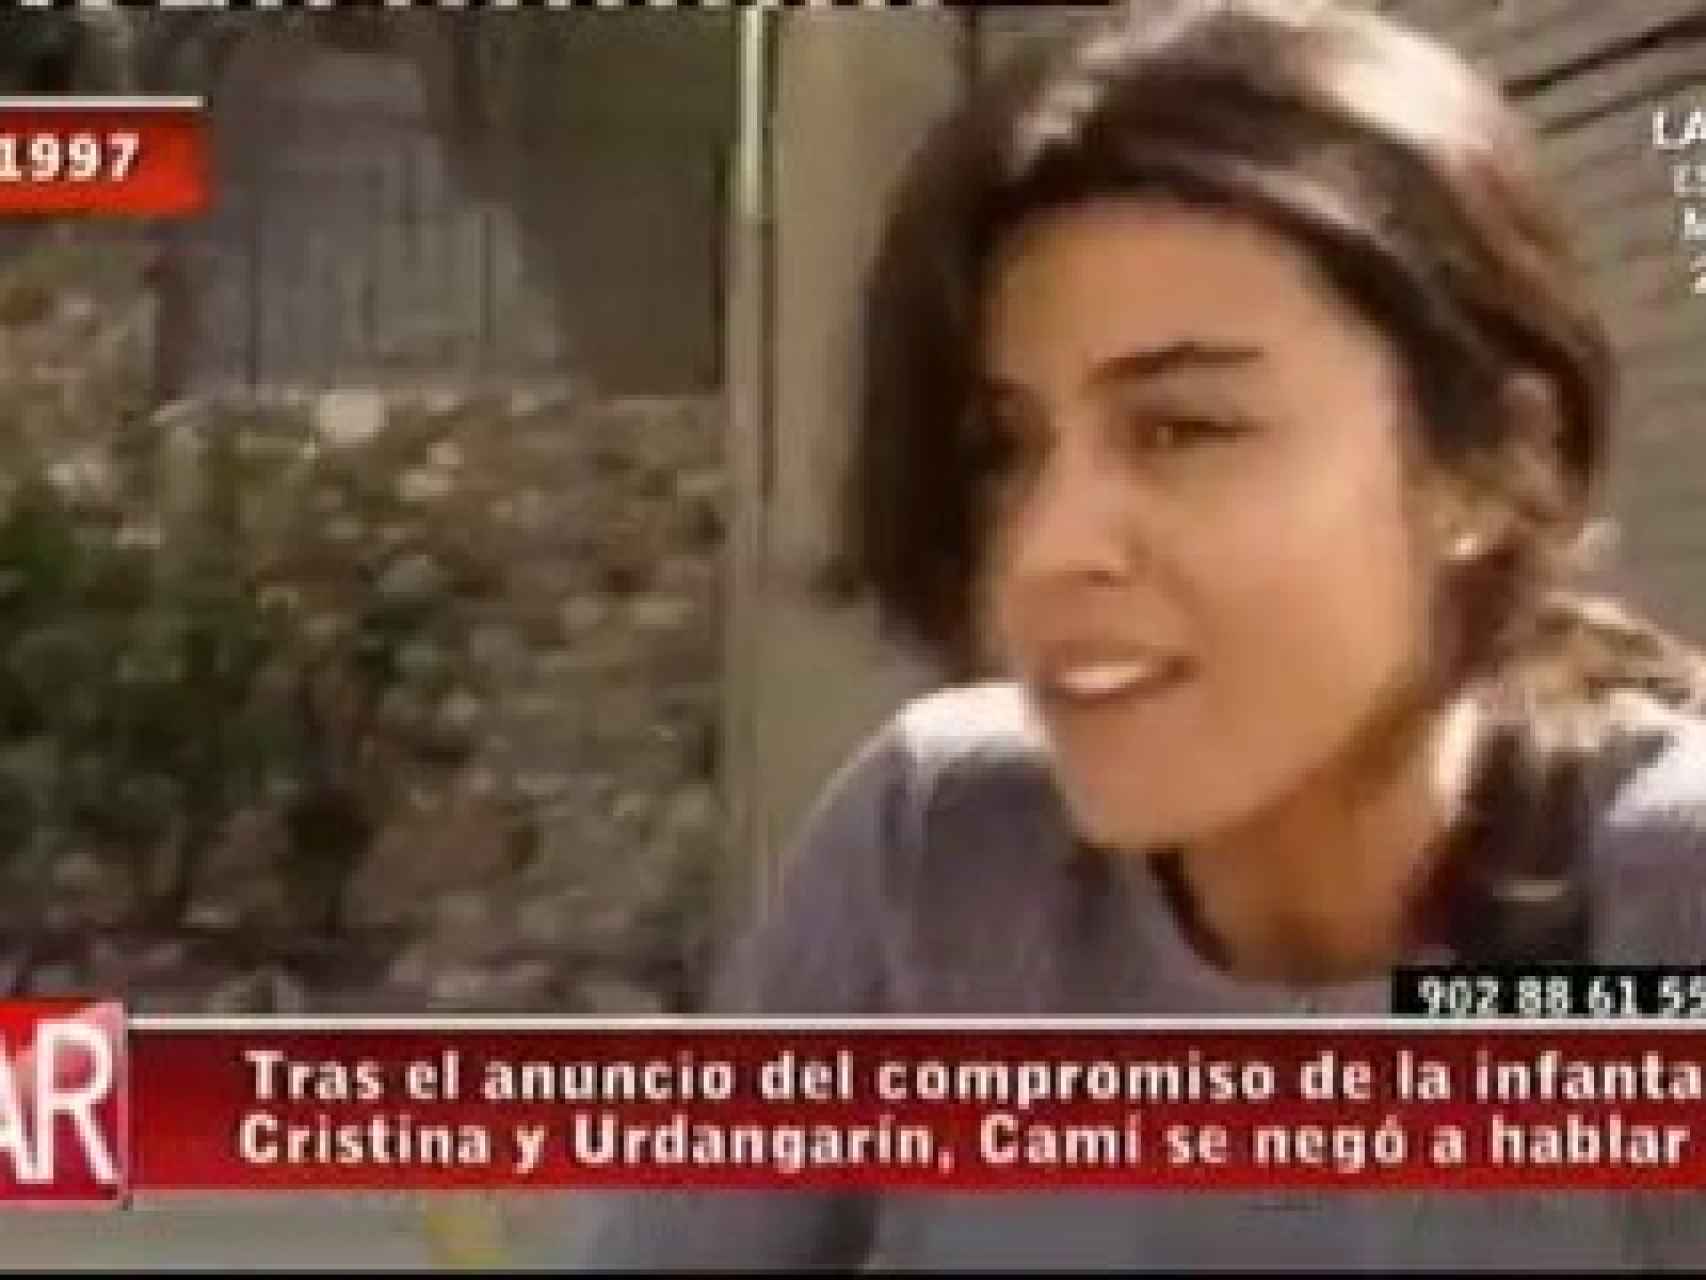 Tras el anuncio de la boda de Iñaki y Cristina, Carmen Camí se negó a hablar.